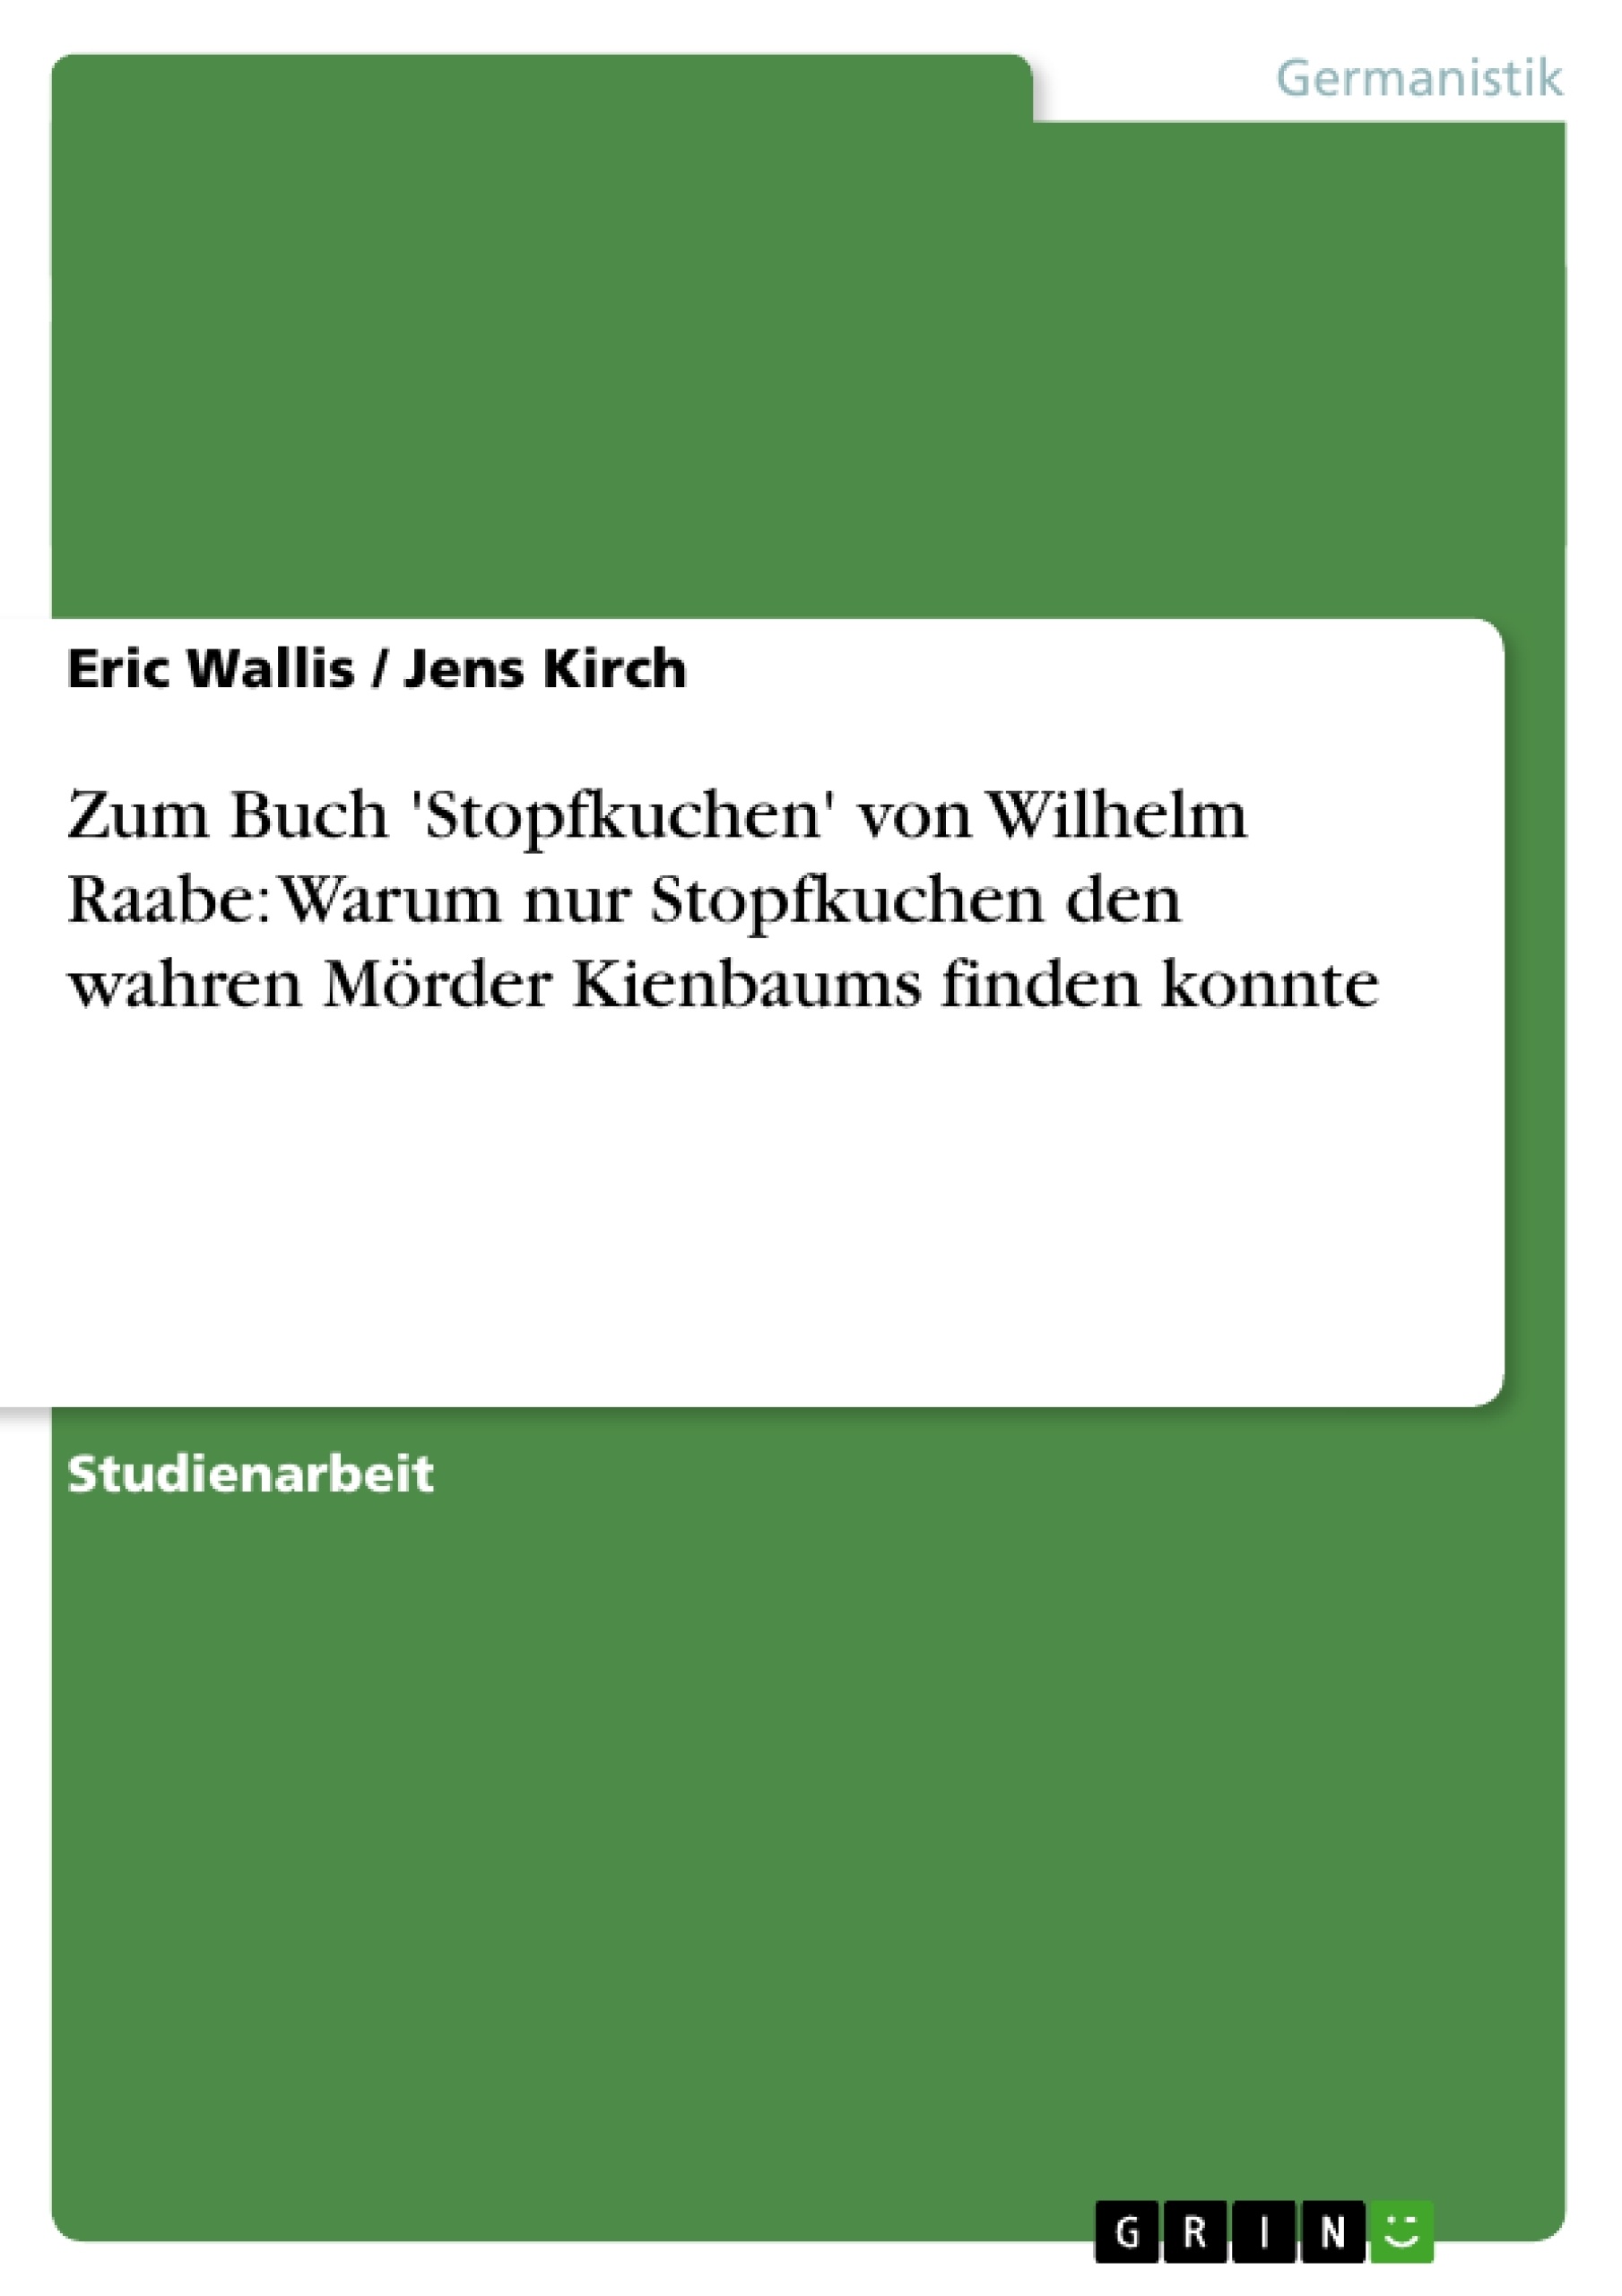 Título: Zum Buch 'Stopfkuchen' von Wilhelm Raabe: Warum nur Stopfkuchen den wahren Mörder Kienbaums finden konnte